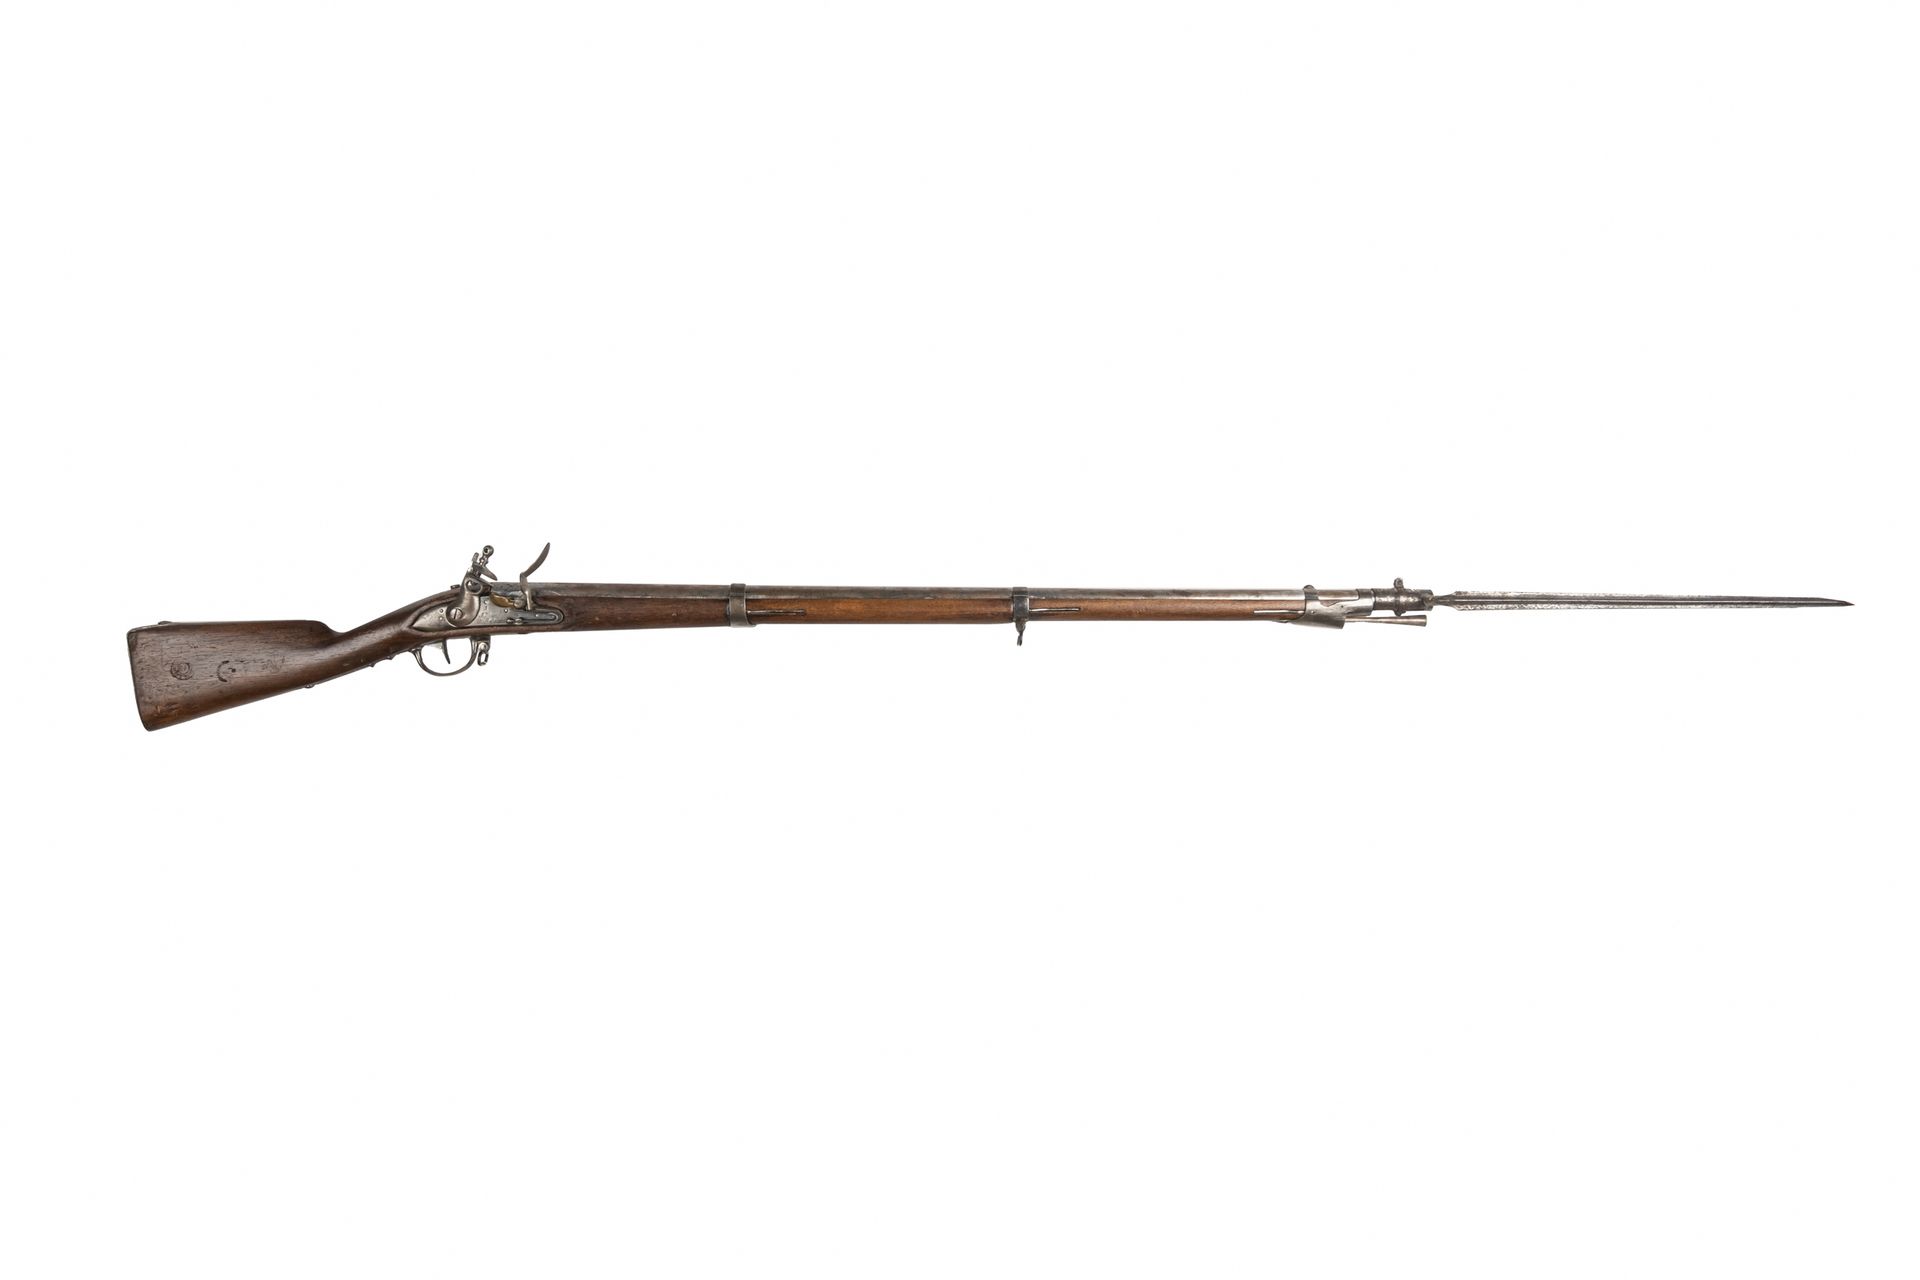 Null 燧发枪 "de voltigeur "型号1777-AN IX。

圆形枪管，有雷鸣般的声音，日期为 "181 "并盖有印章。后膛盖印有 "Mle A&hellip;